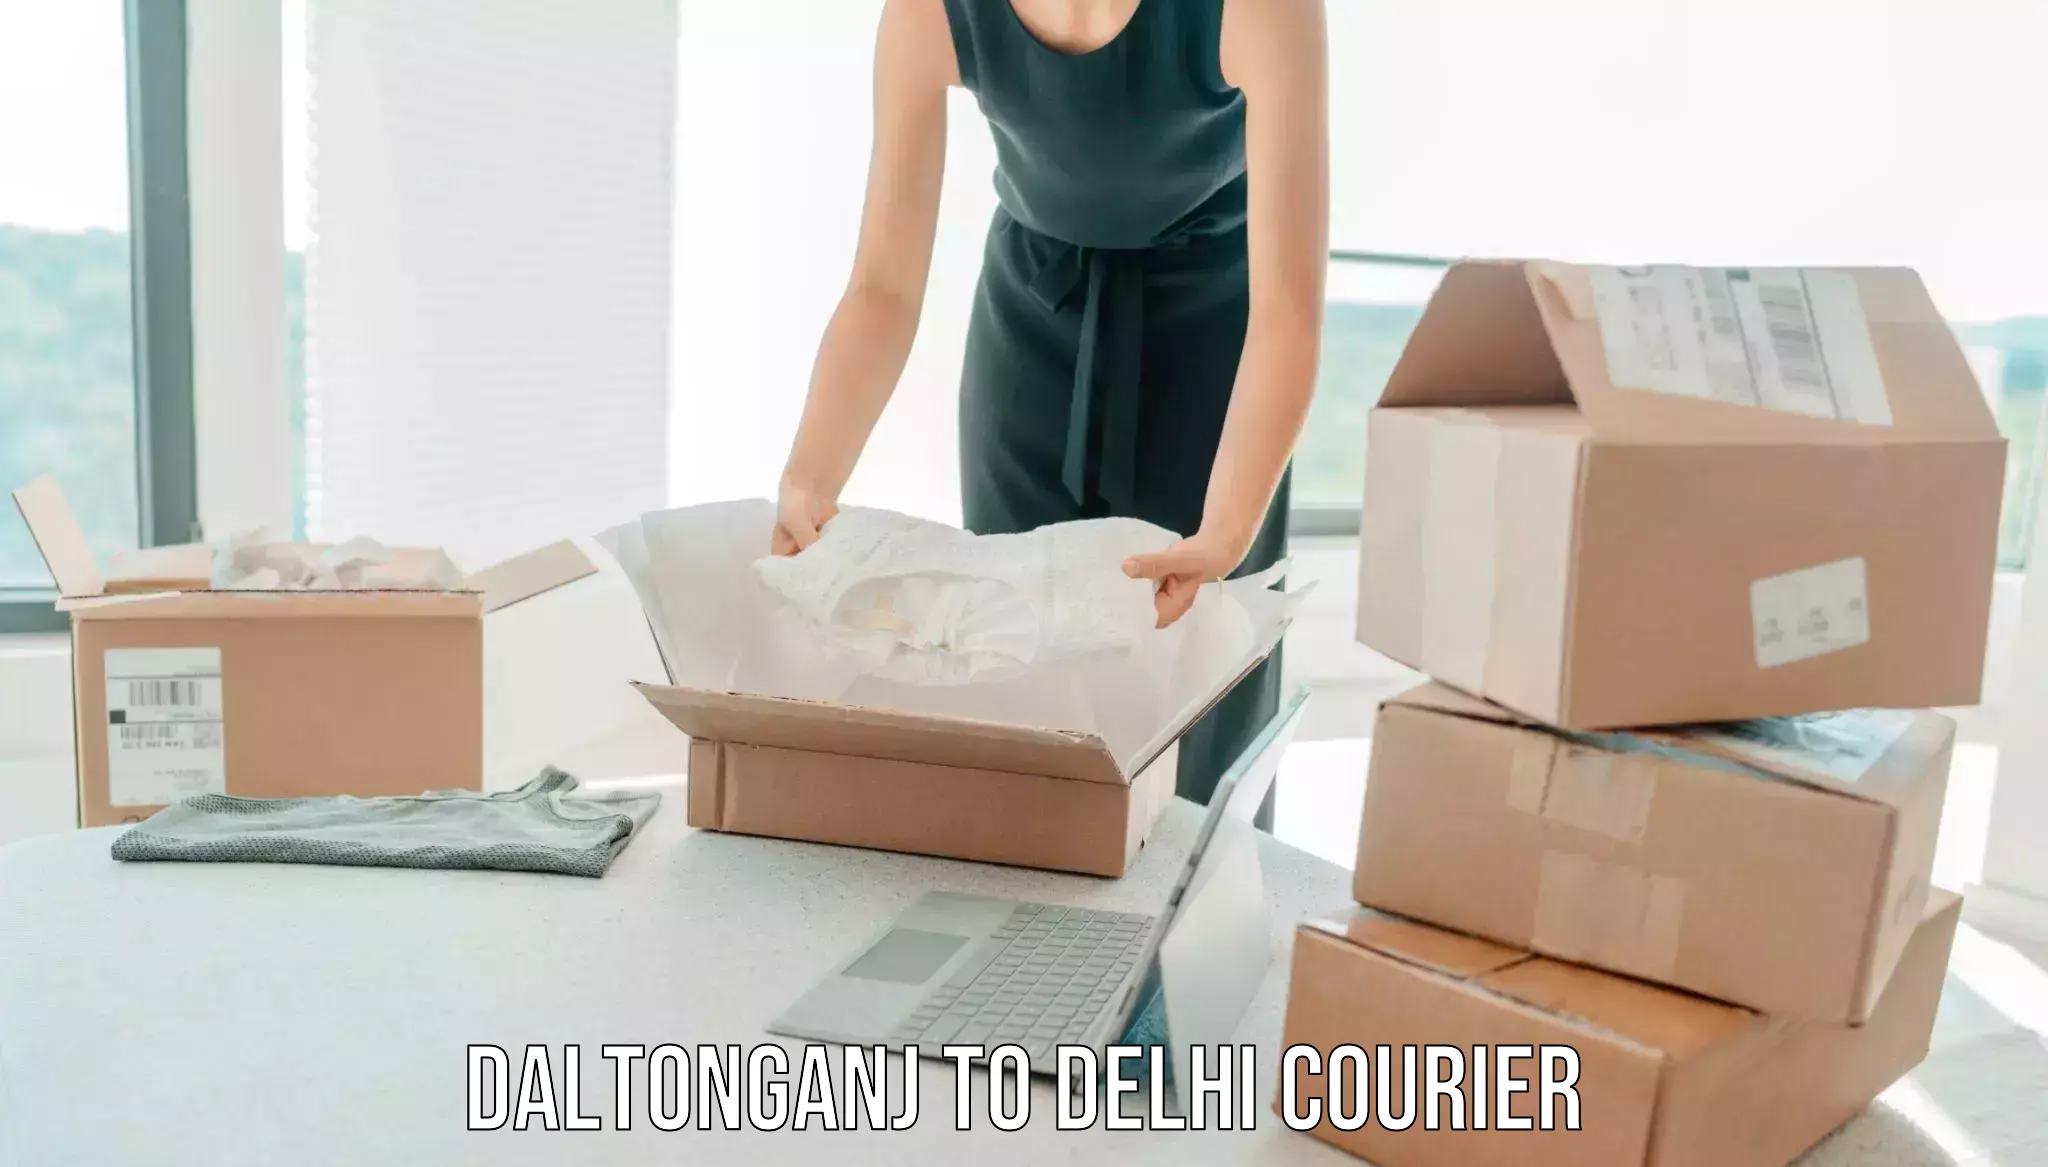 Skilled furniture transporters Daltonganj to NCR